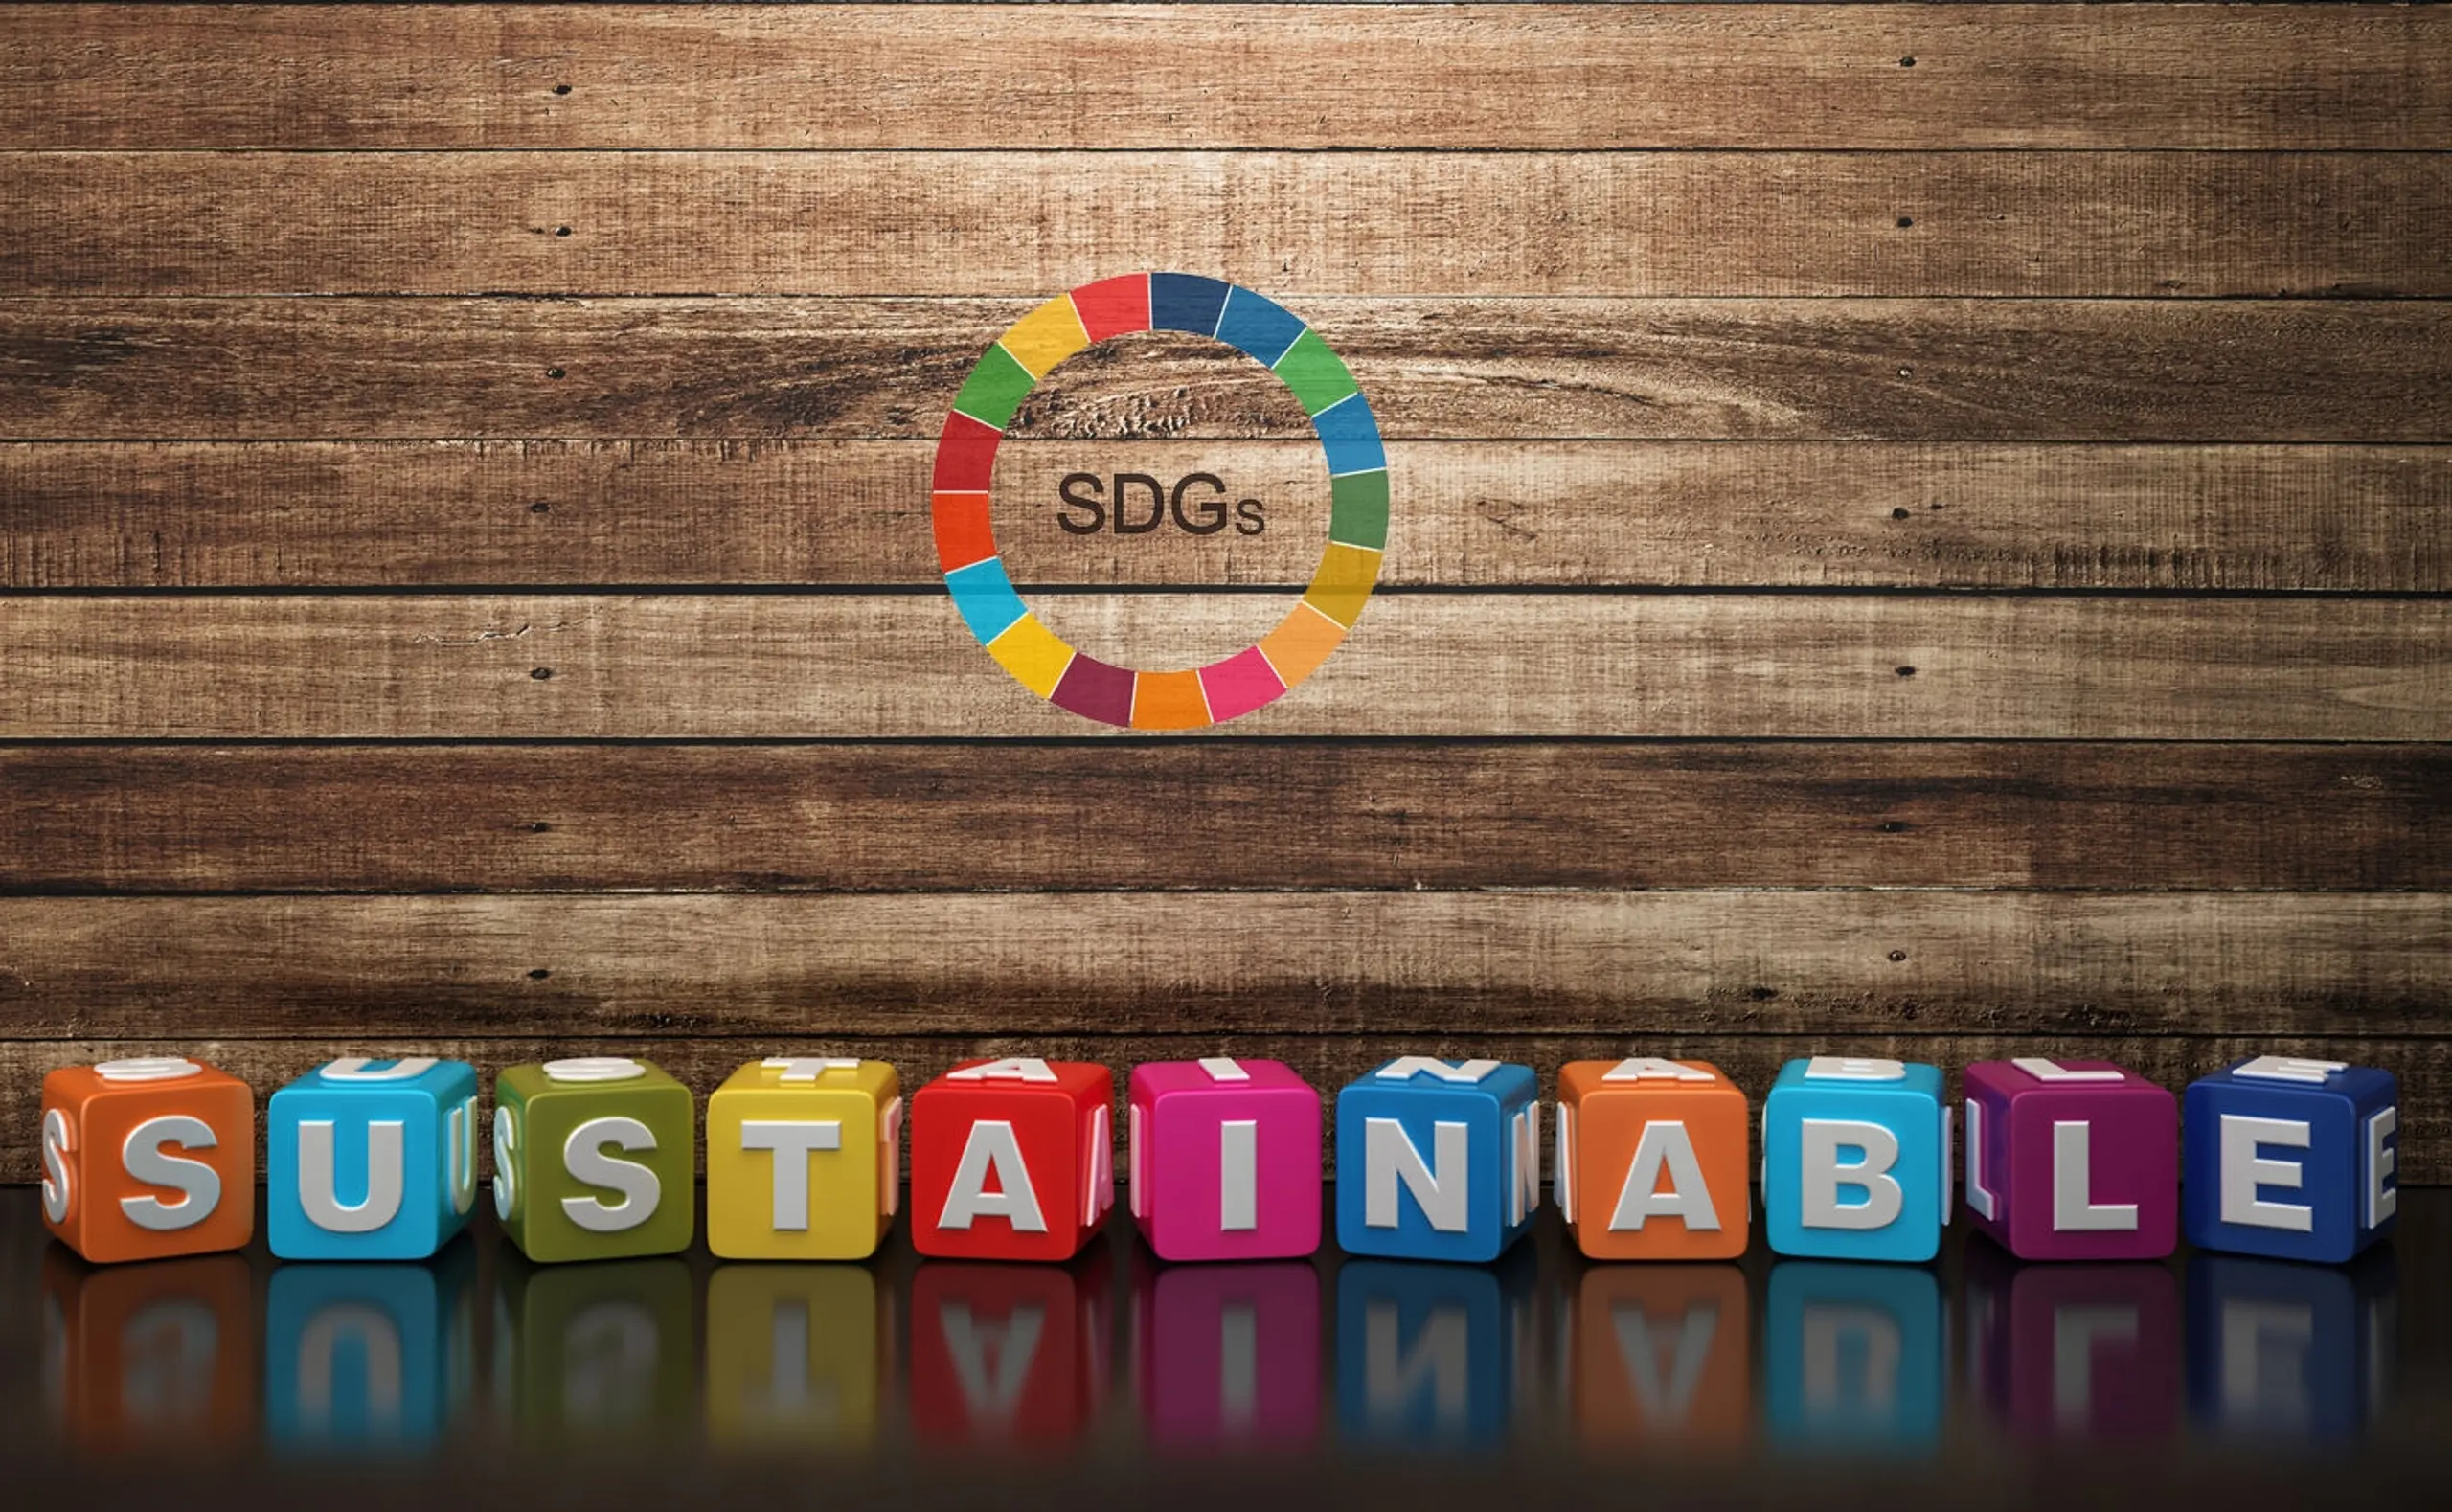 Sustainabele Development Goals der UN